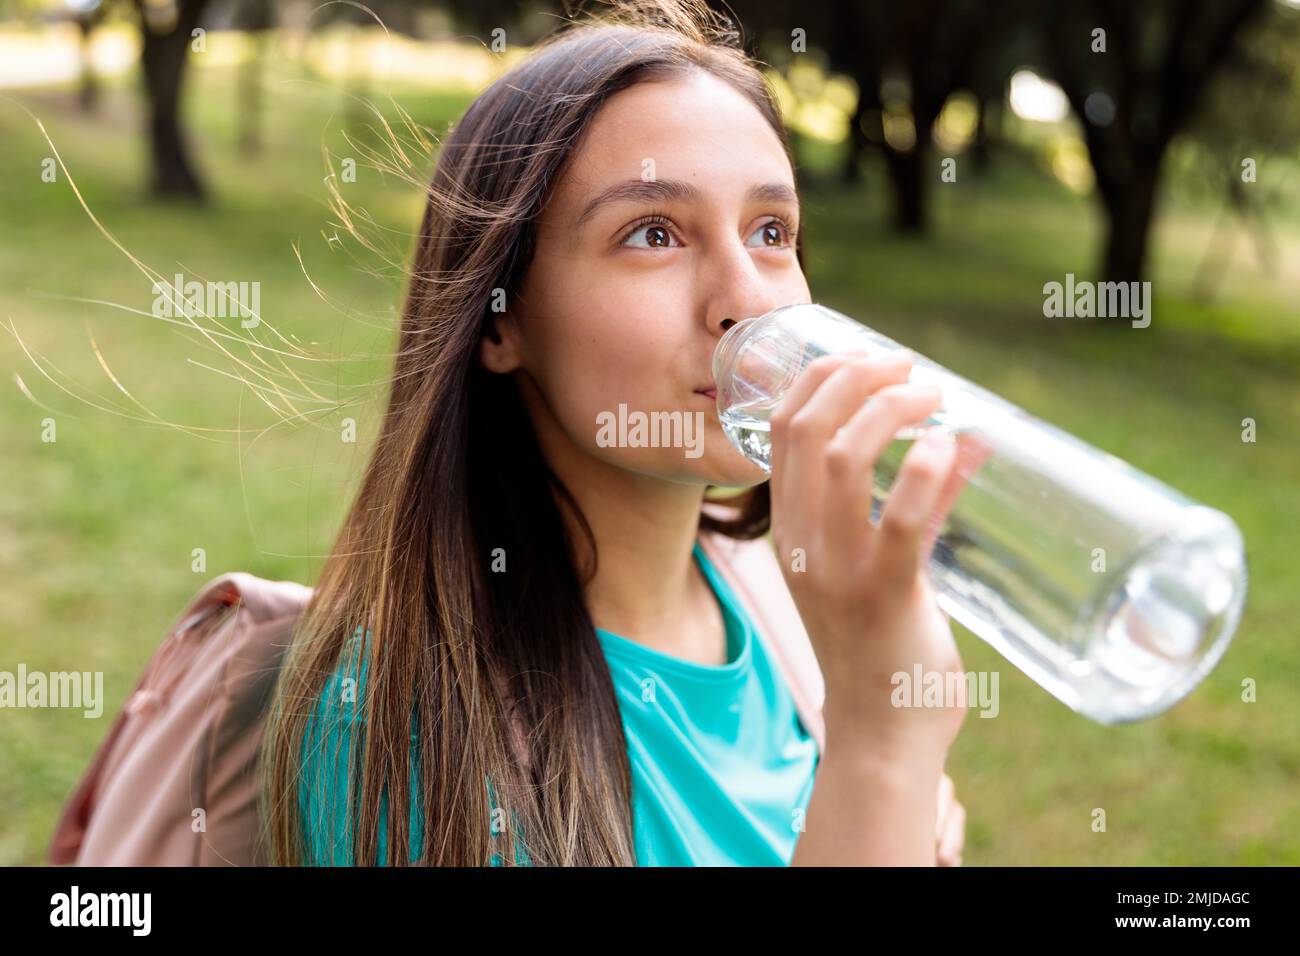 Junge Weiße, die Wasser aus einer Glasflasche im Park trinkt Stockfoto